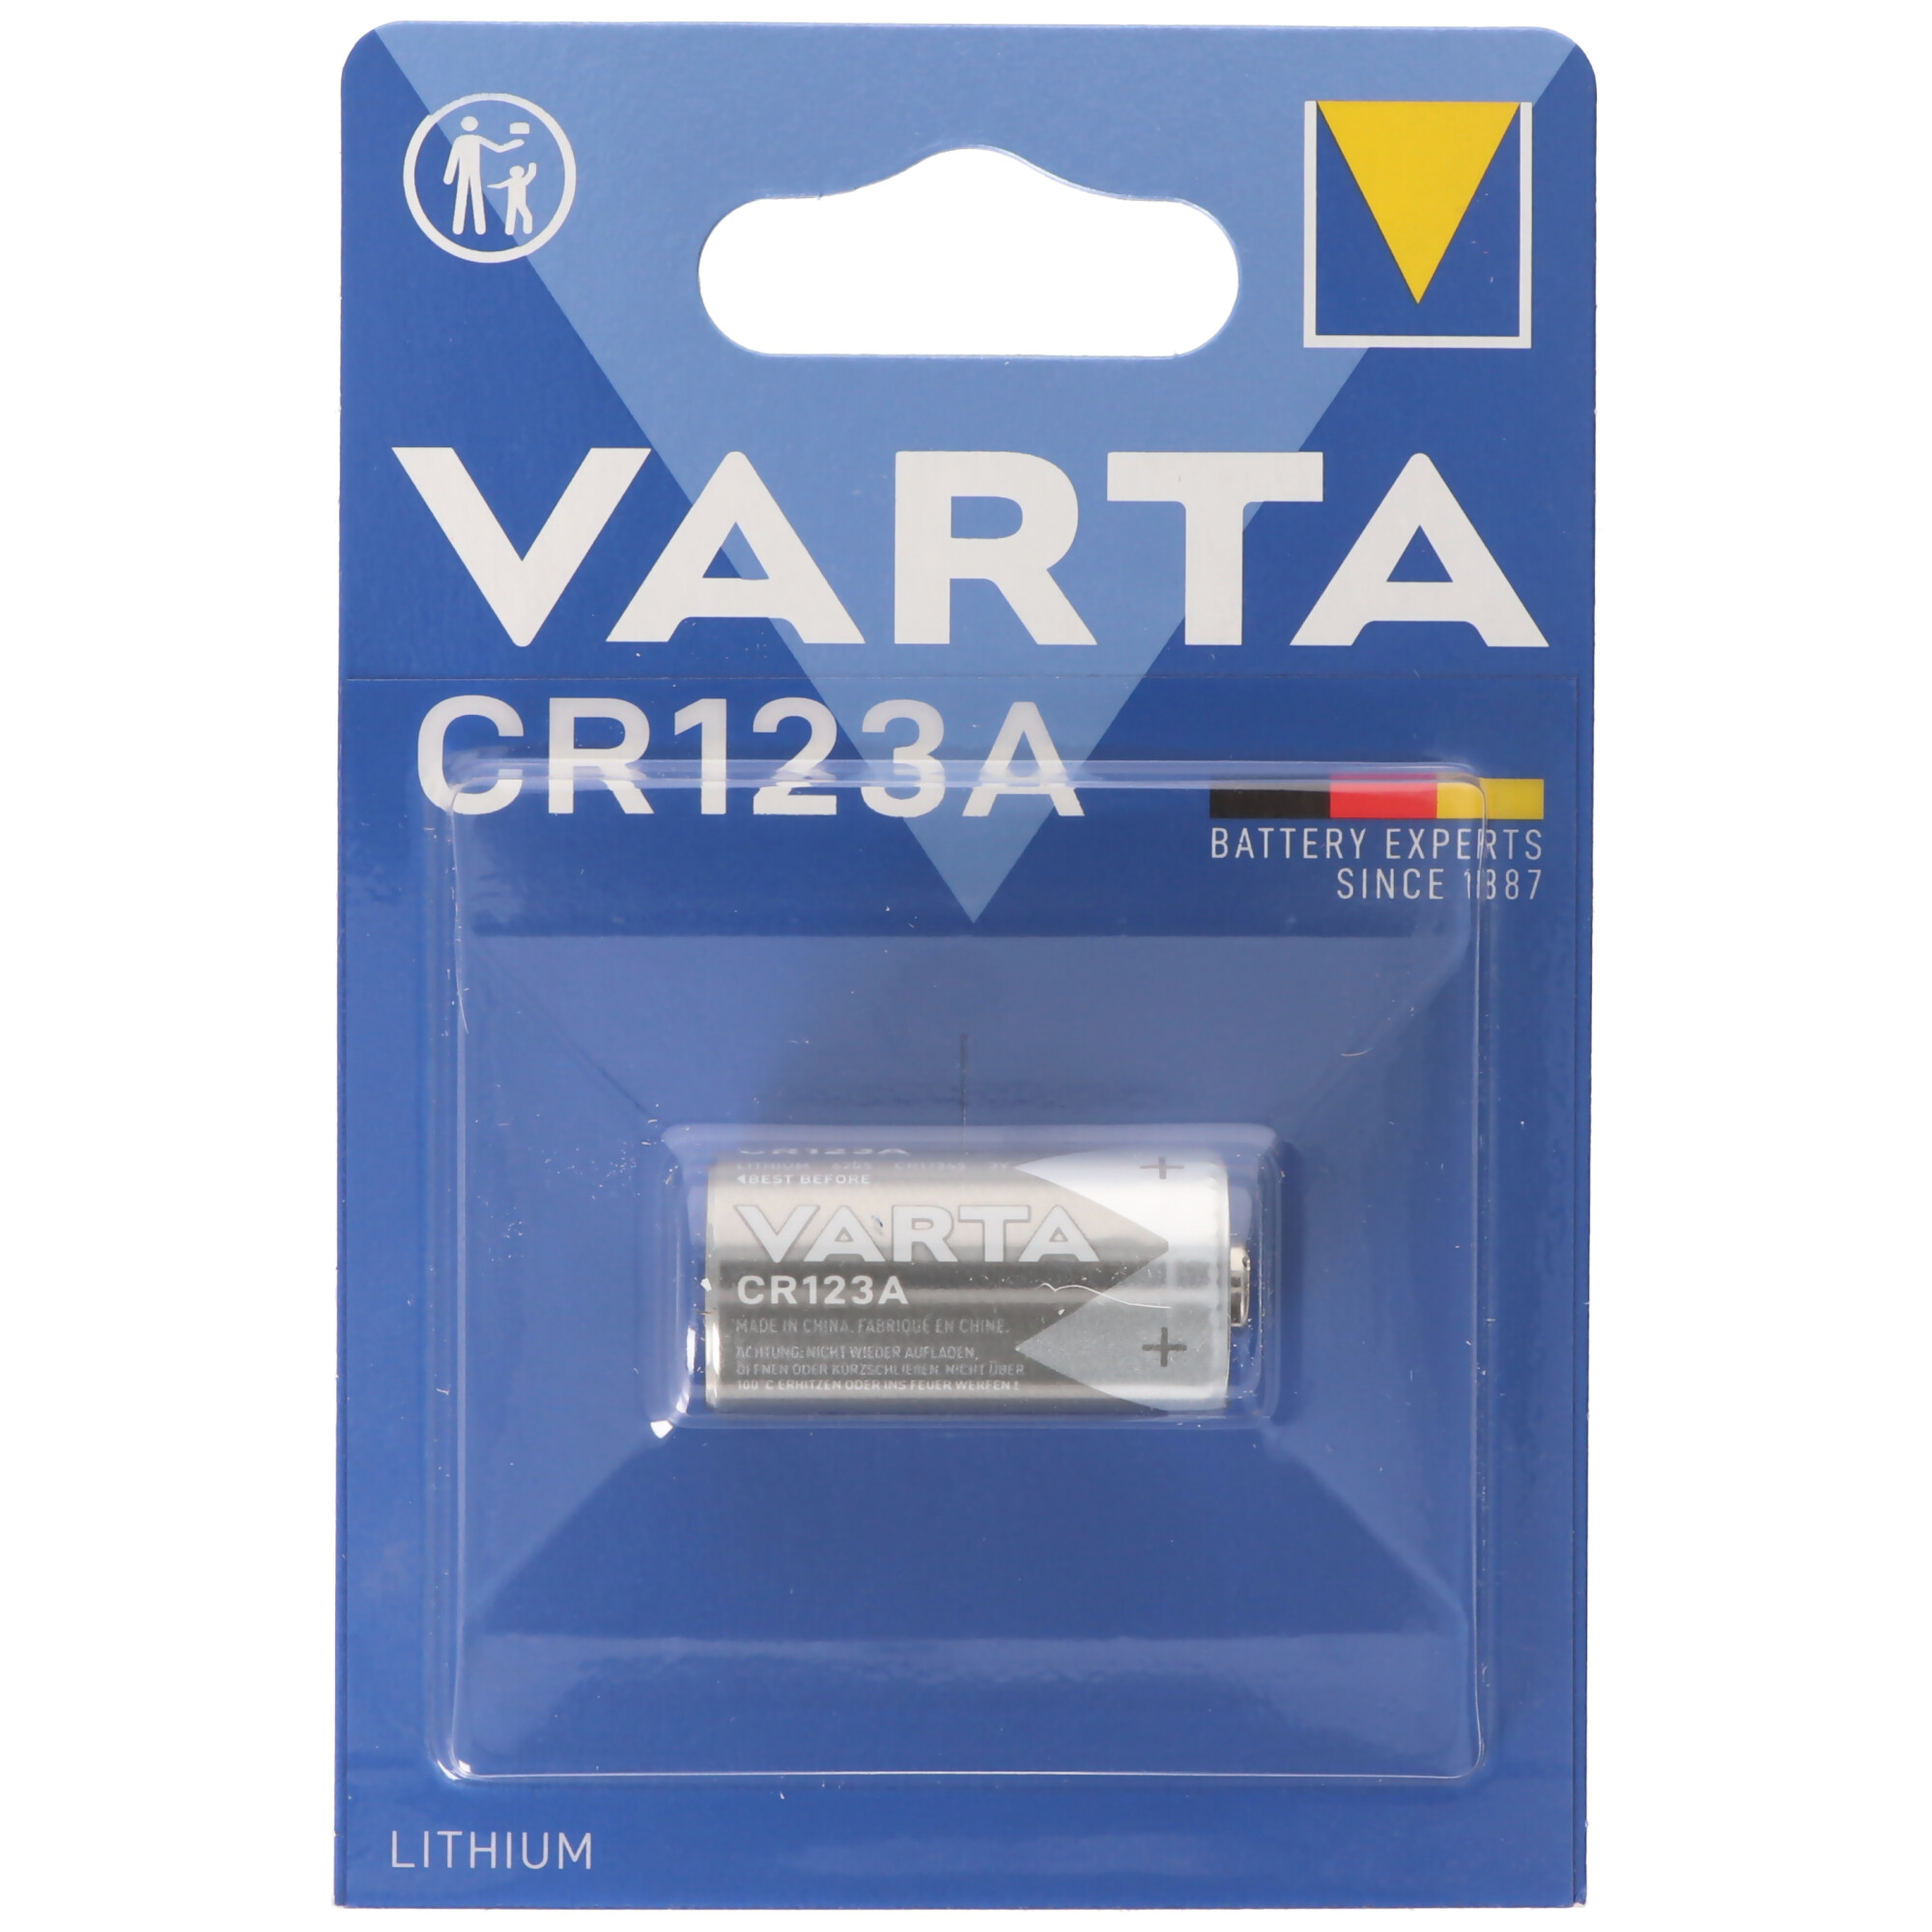 CR123A Varta Batterie Photo Lithium 6205 CR123A IEC CR17345